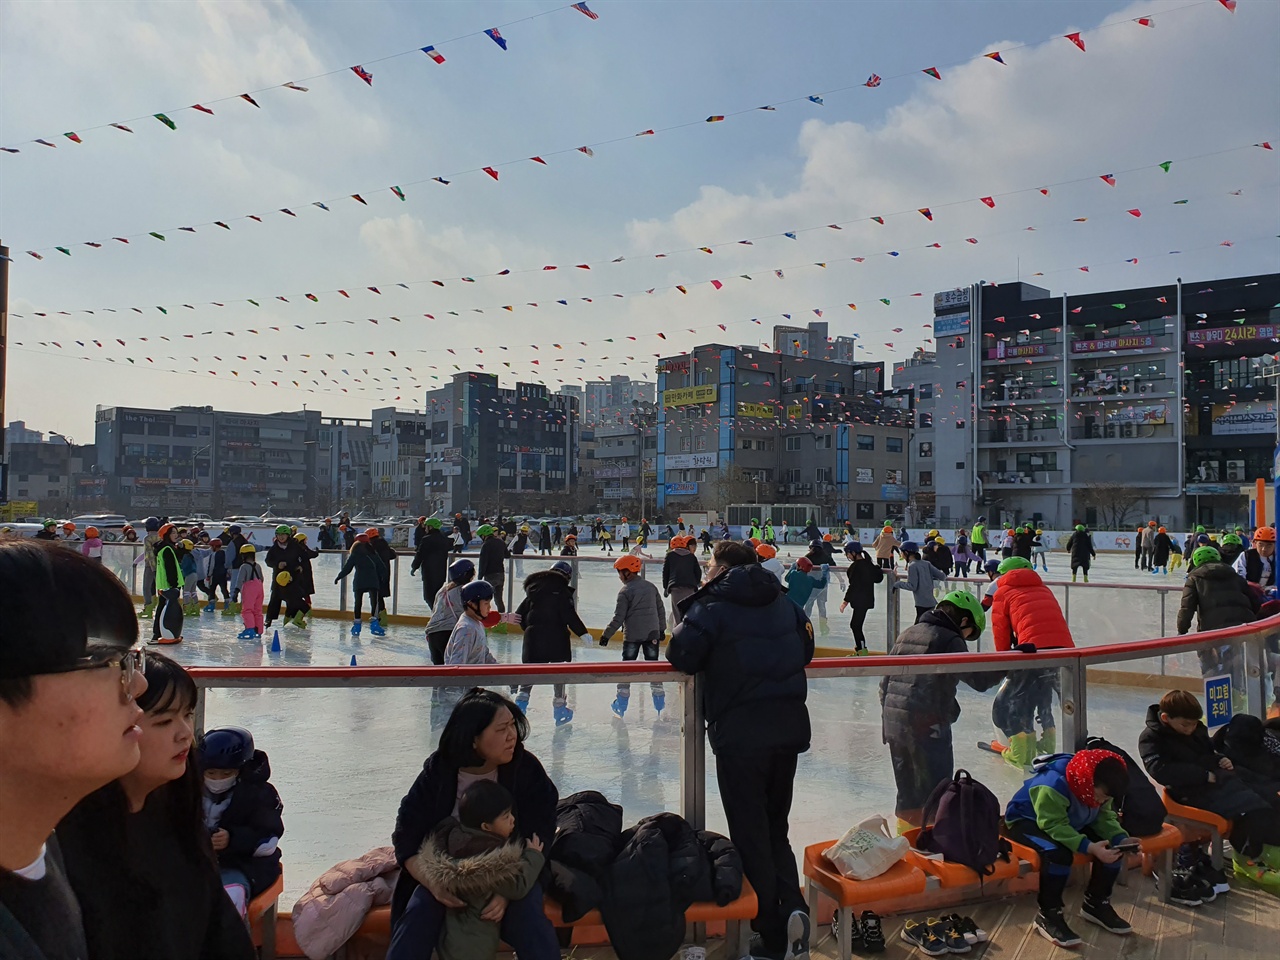 서산시에 따르면 야외스케이트장 아이스링크는 700여 명을 동시 수용할 수 있는 2100㎡ 규모로, 지난해보다 면적이 늘어난 얼음 썰매장(400㎡)도 별도로 갖추고 있어 어린이들에게 특히 인기가 높다.